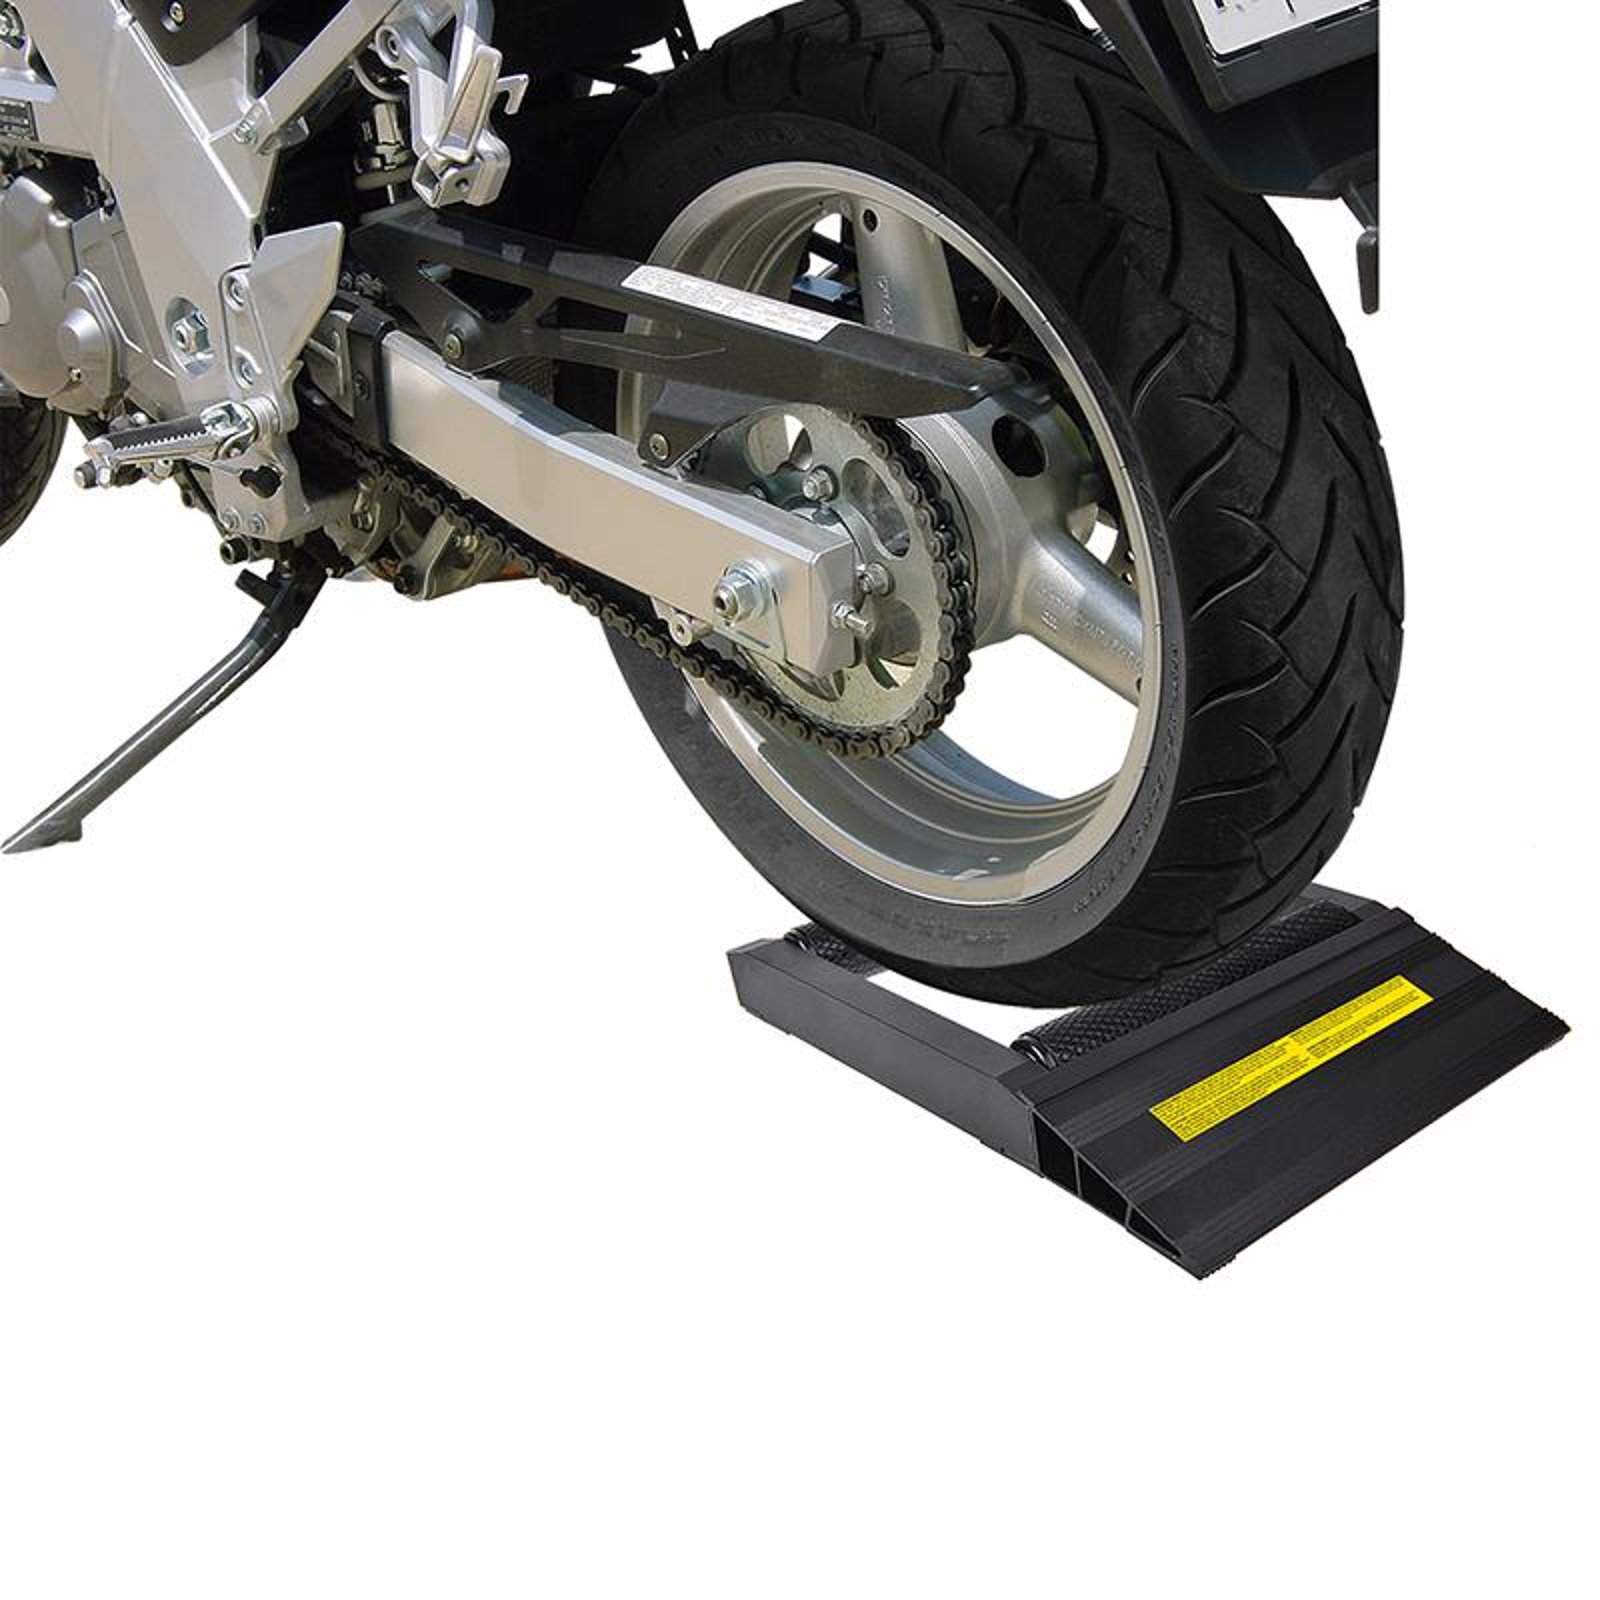 Motorrad Rad Drehhilfe schwarz Alu max. 200 mm Hinterreifen Putzhilfe Kettenpflege von APT